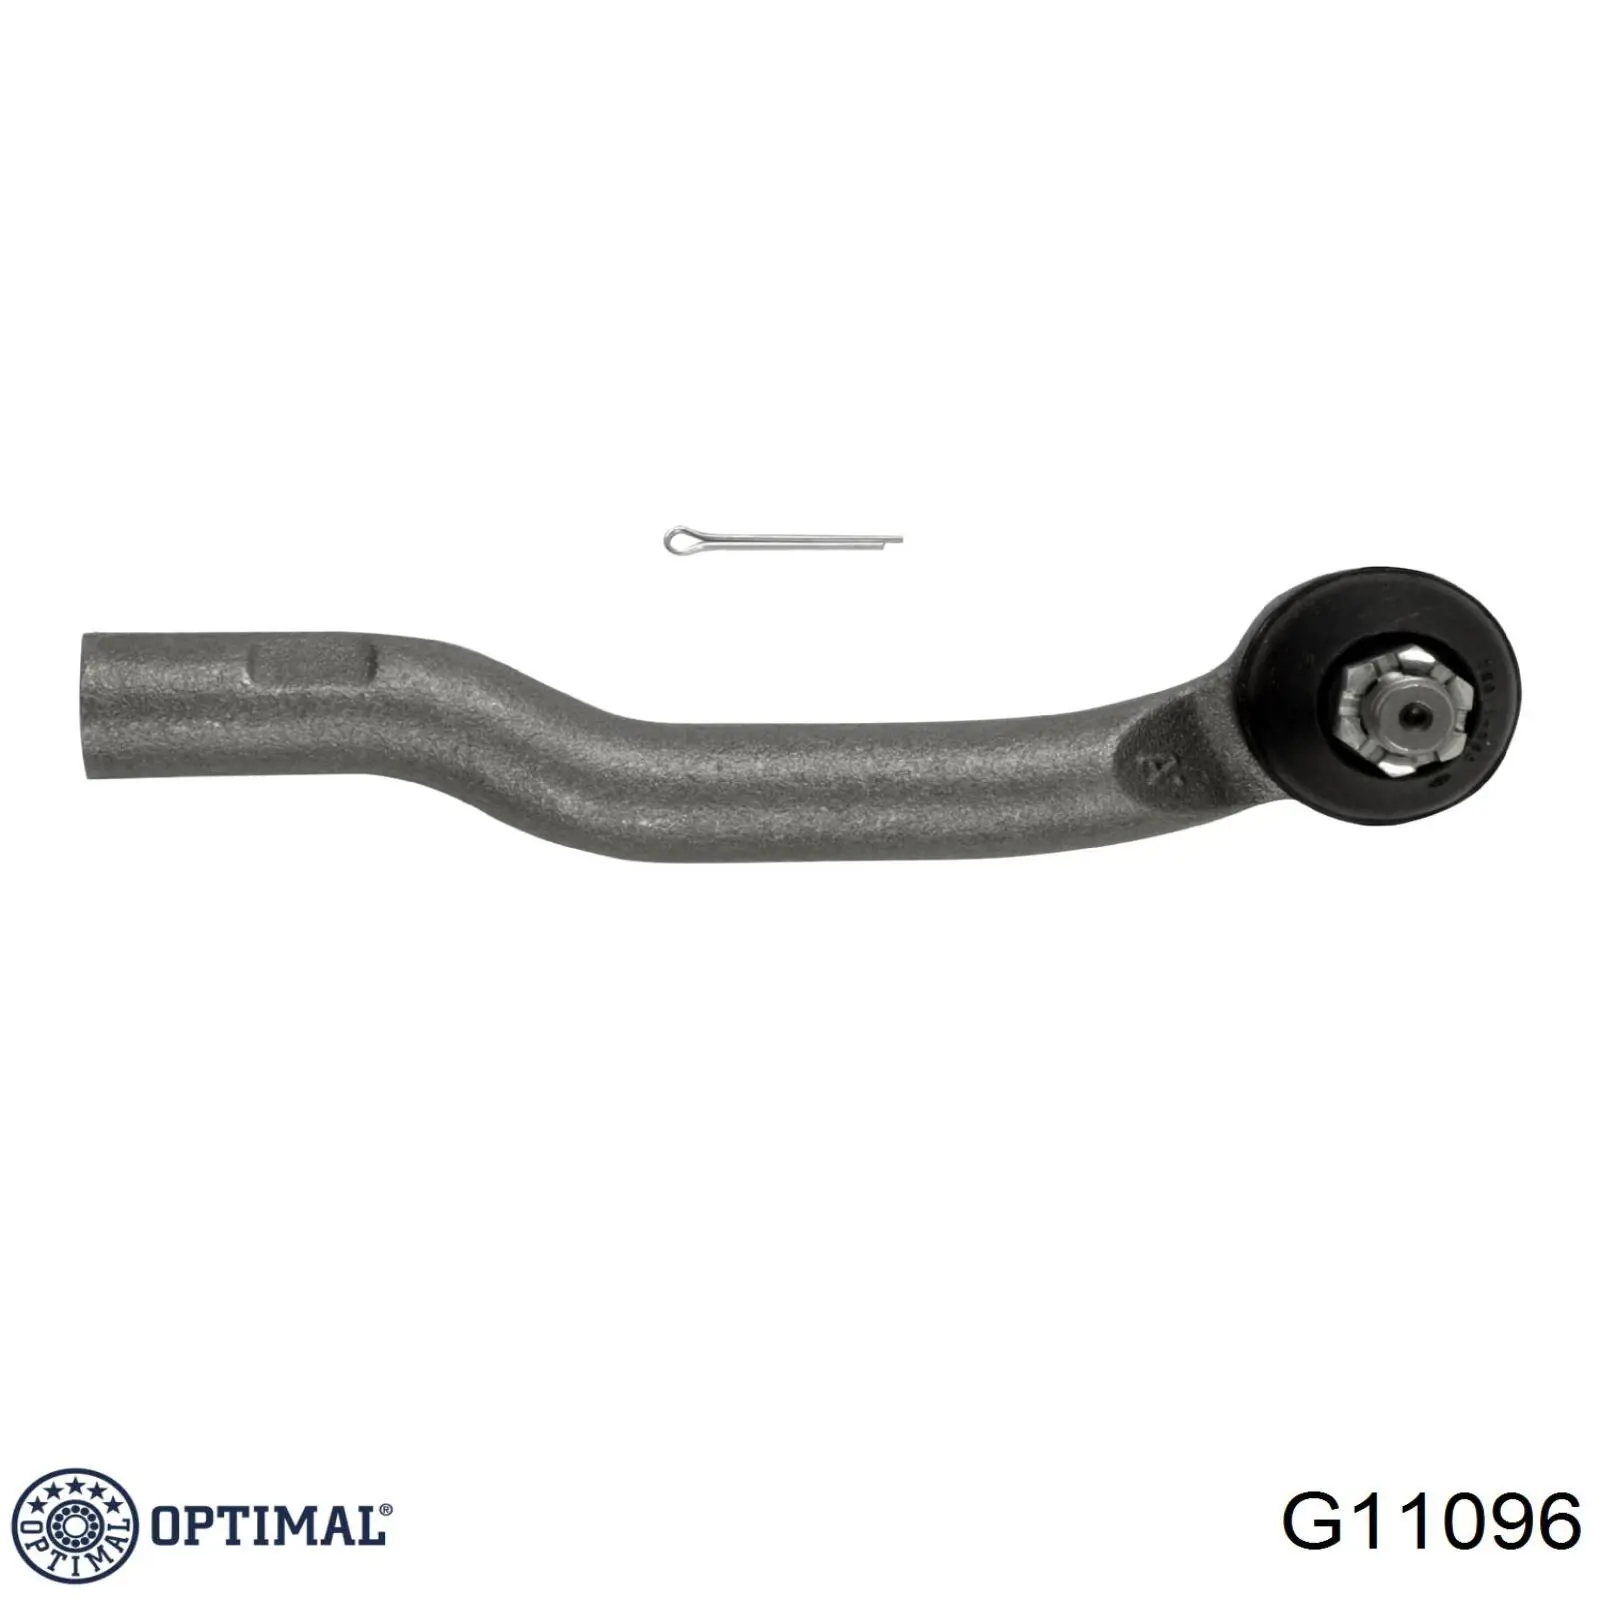 G11096 Optimal rótula barra de acoplamiento exterior